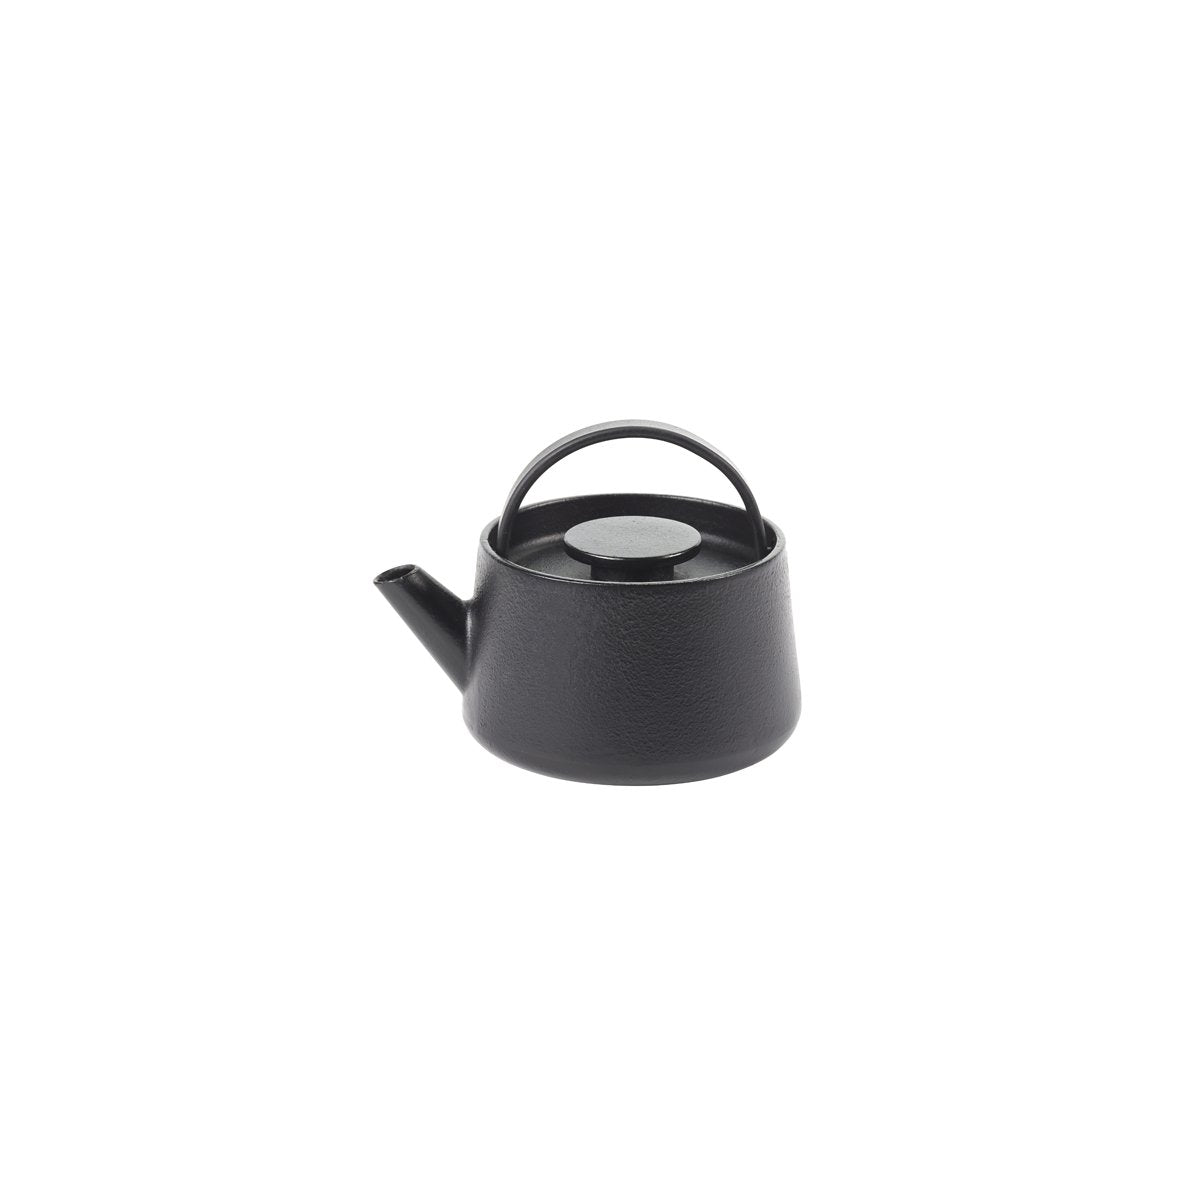 SERAXB6820001 Serax Serax Inku Black Cast Iron Teapot 150x125mm Tomkin Australia Hospitality Supplies